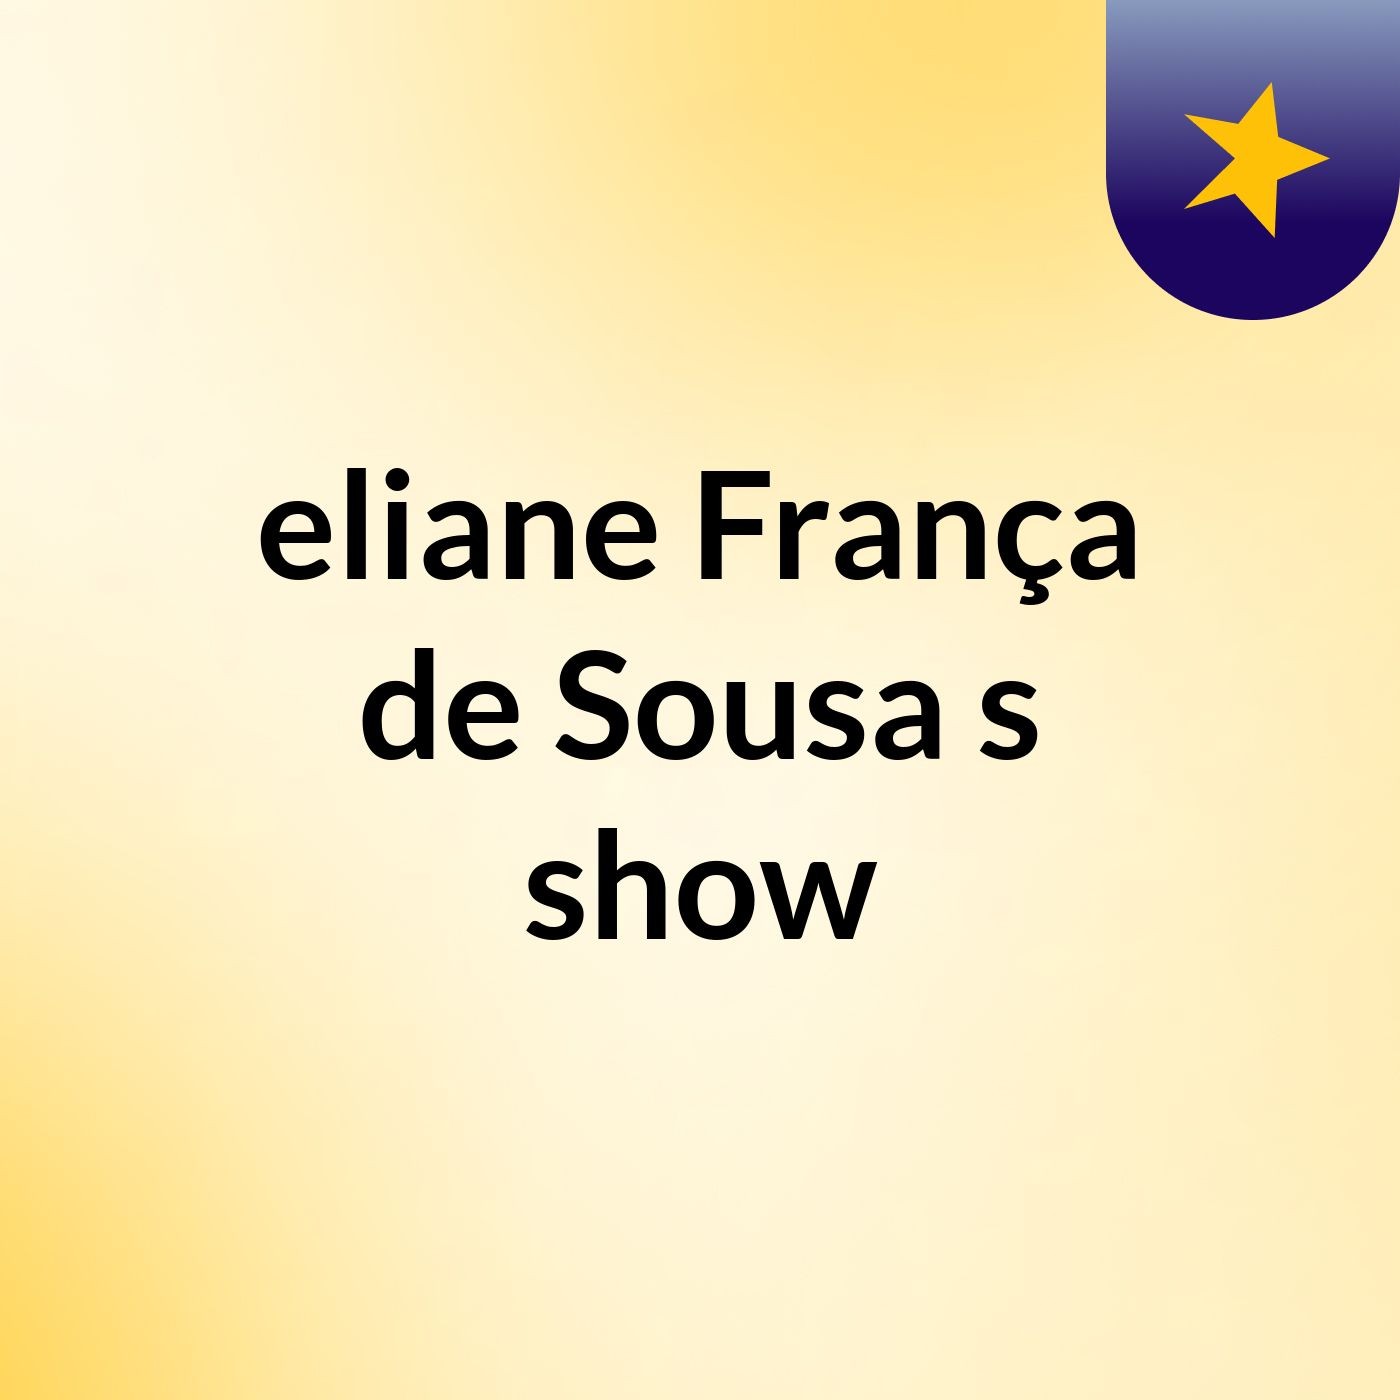 eliane França de Sousa's show